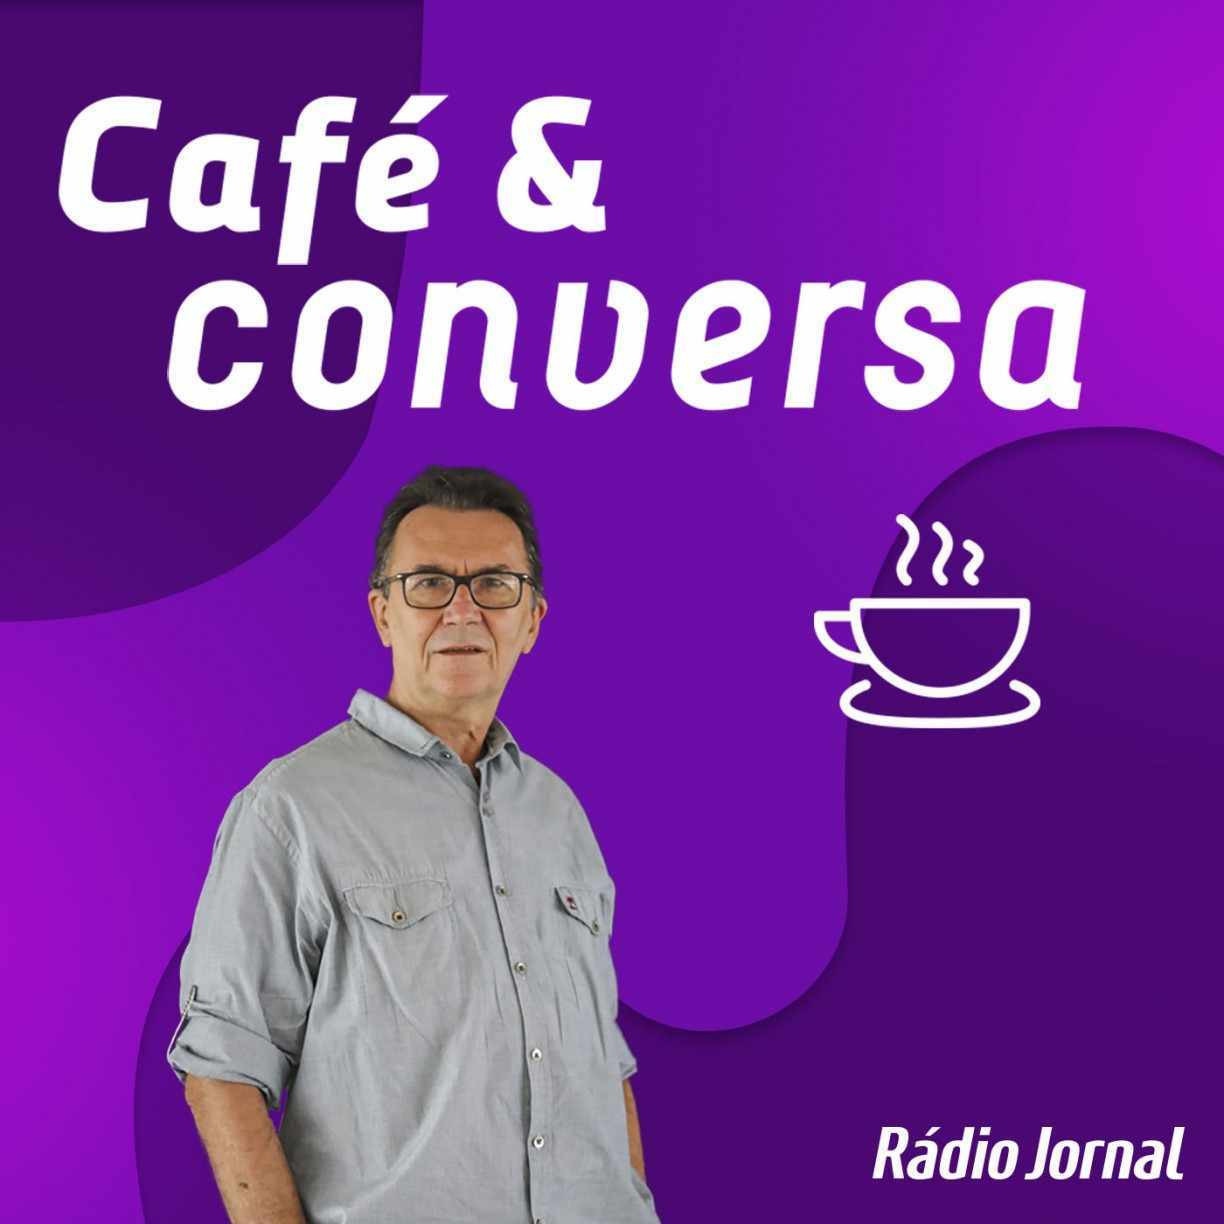 Café & Conversa